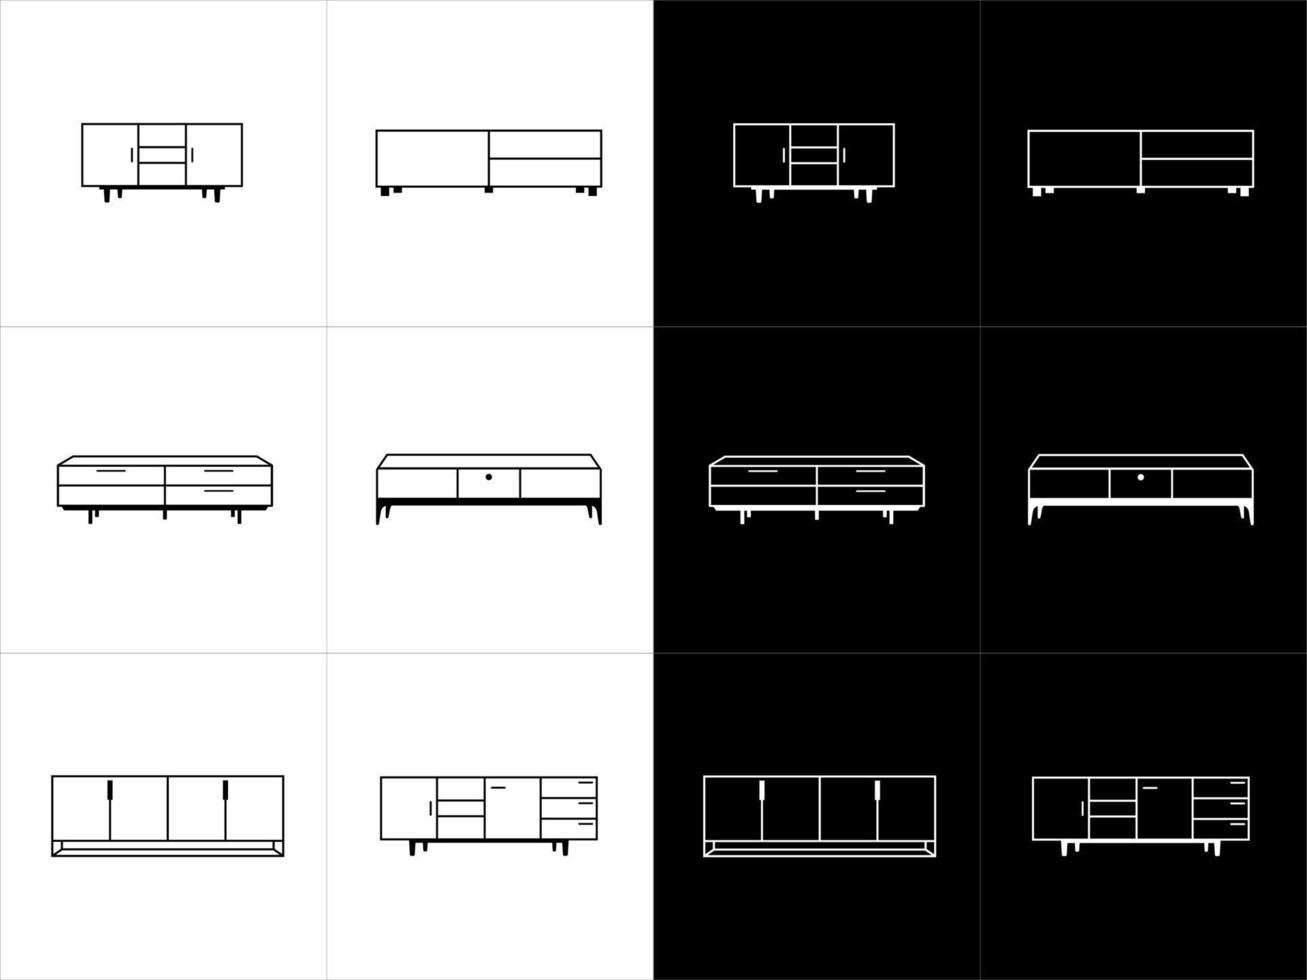 möbel linje ikon uppsättning. bedside tabell, skåp. möbel begrepp. vektor översikt symbol samling på svart och vit bakgrund.